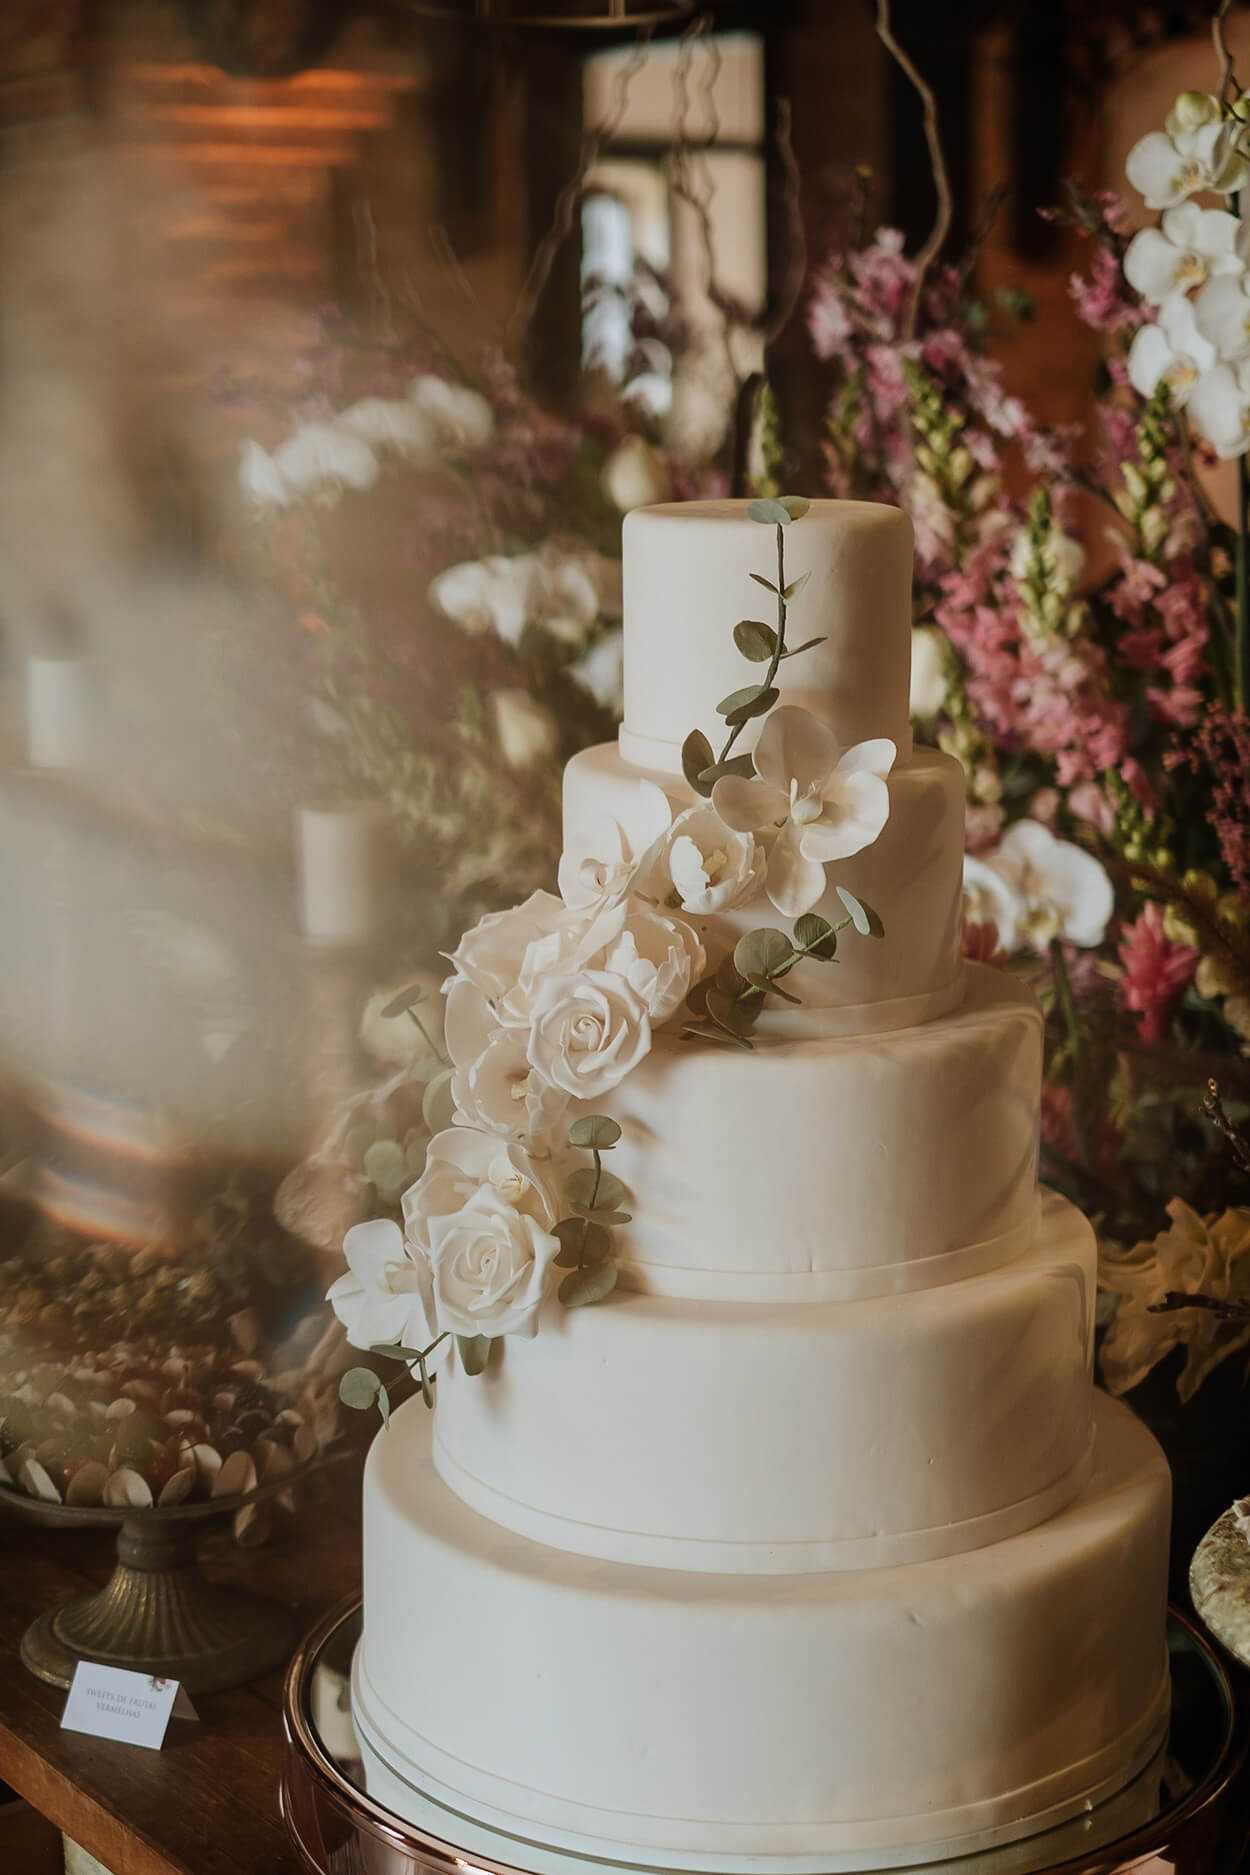 bolo de casamento branco redondo com cinco andares com topo de floral de rosas brancas e folhas de eucalipto